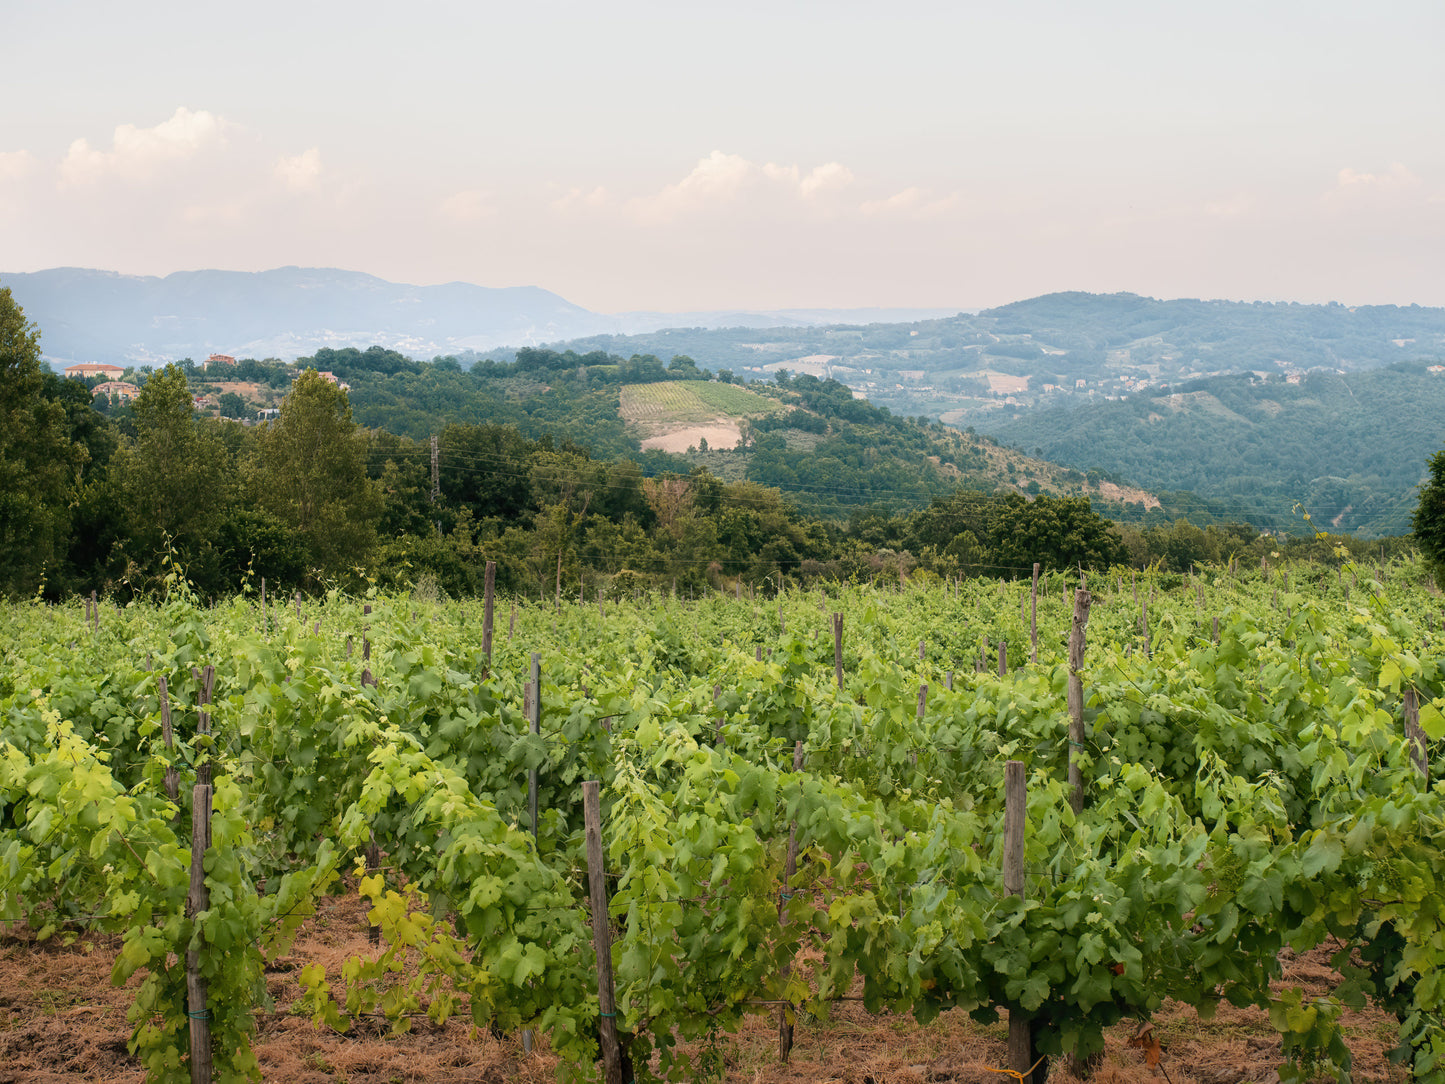 Adoptez une vigne - Entreprise : Masseria Alfano